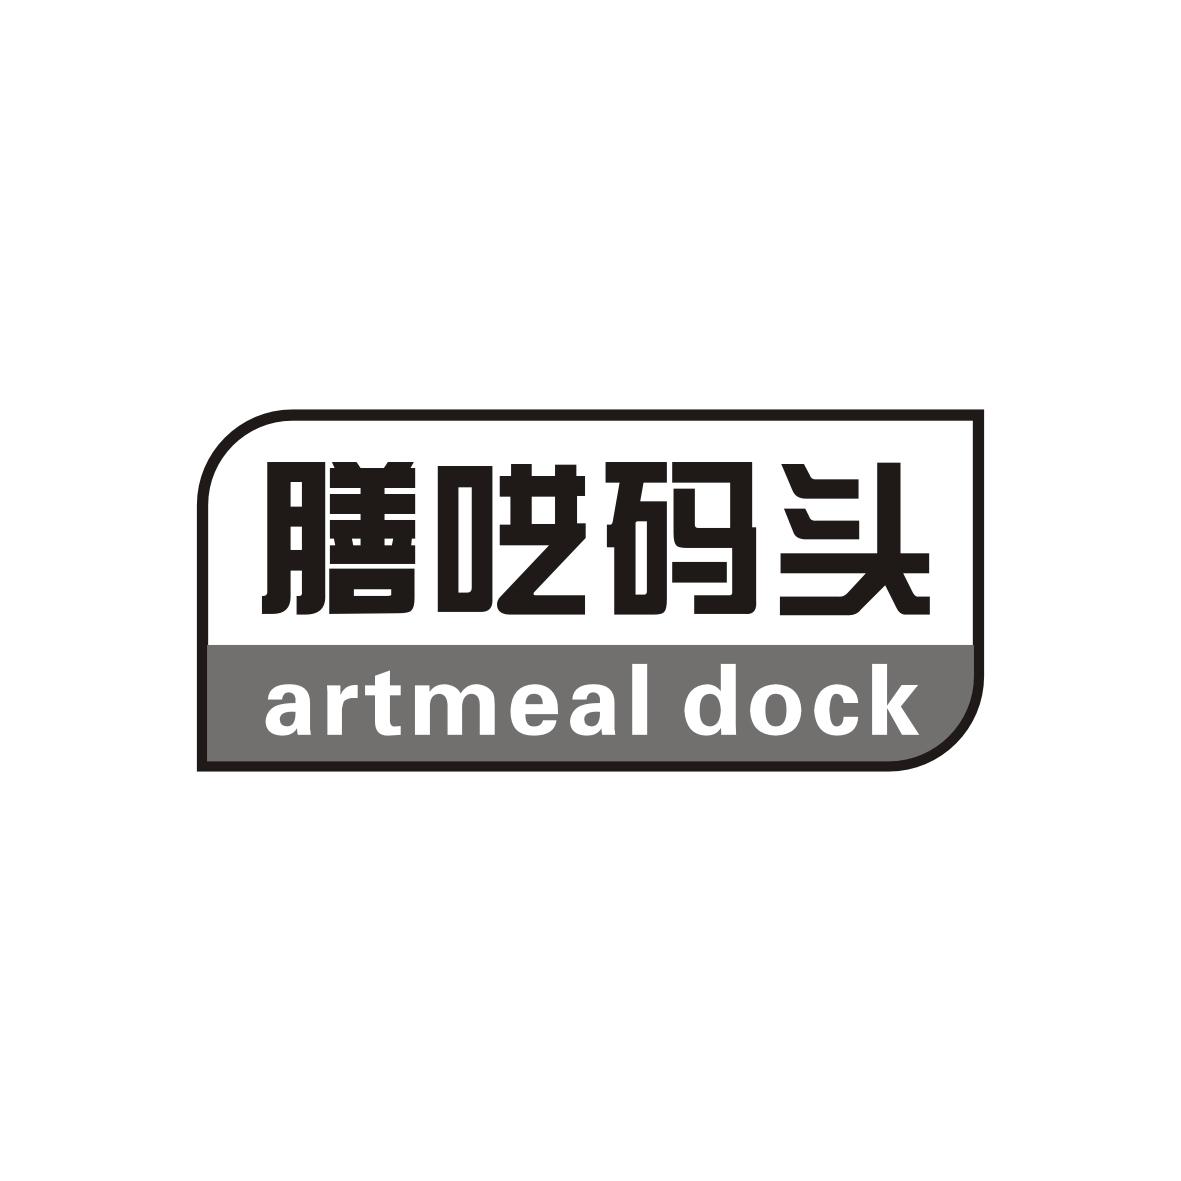 膳呓码头
artmeal dock